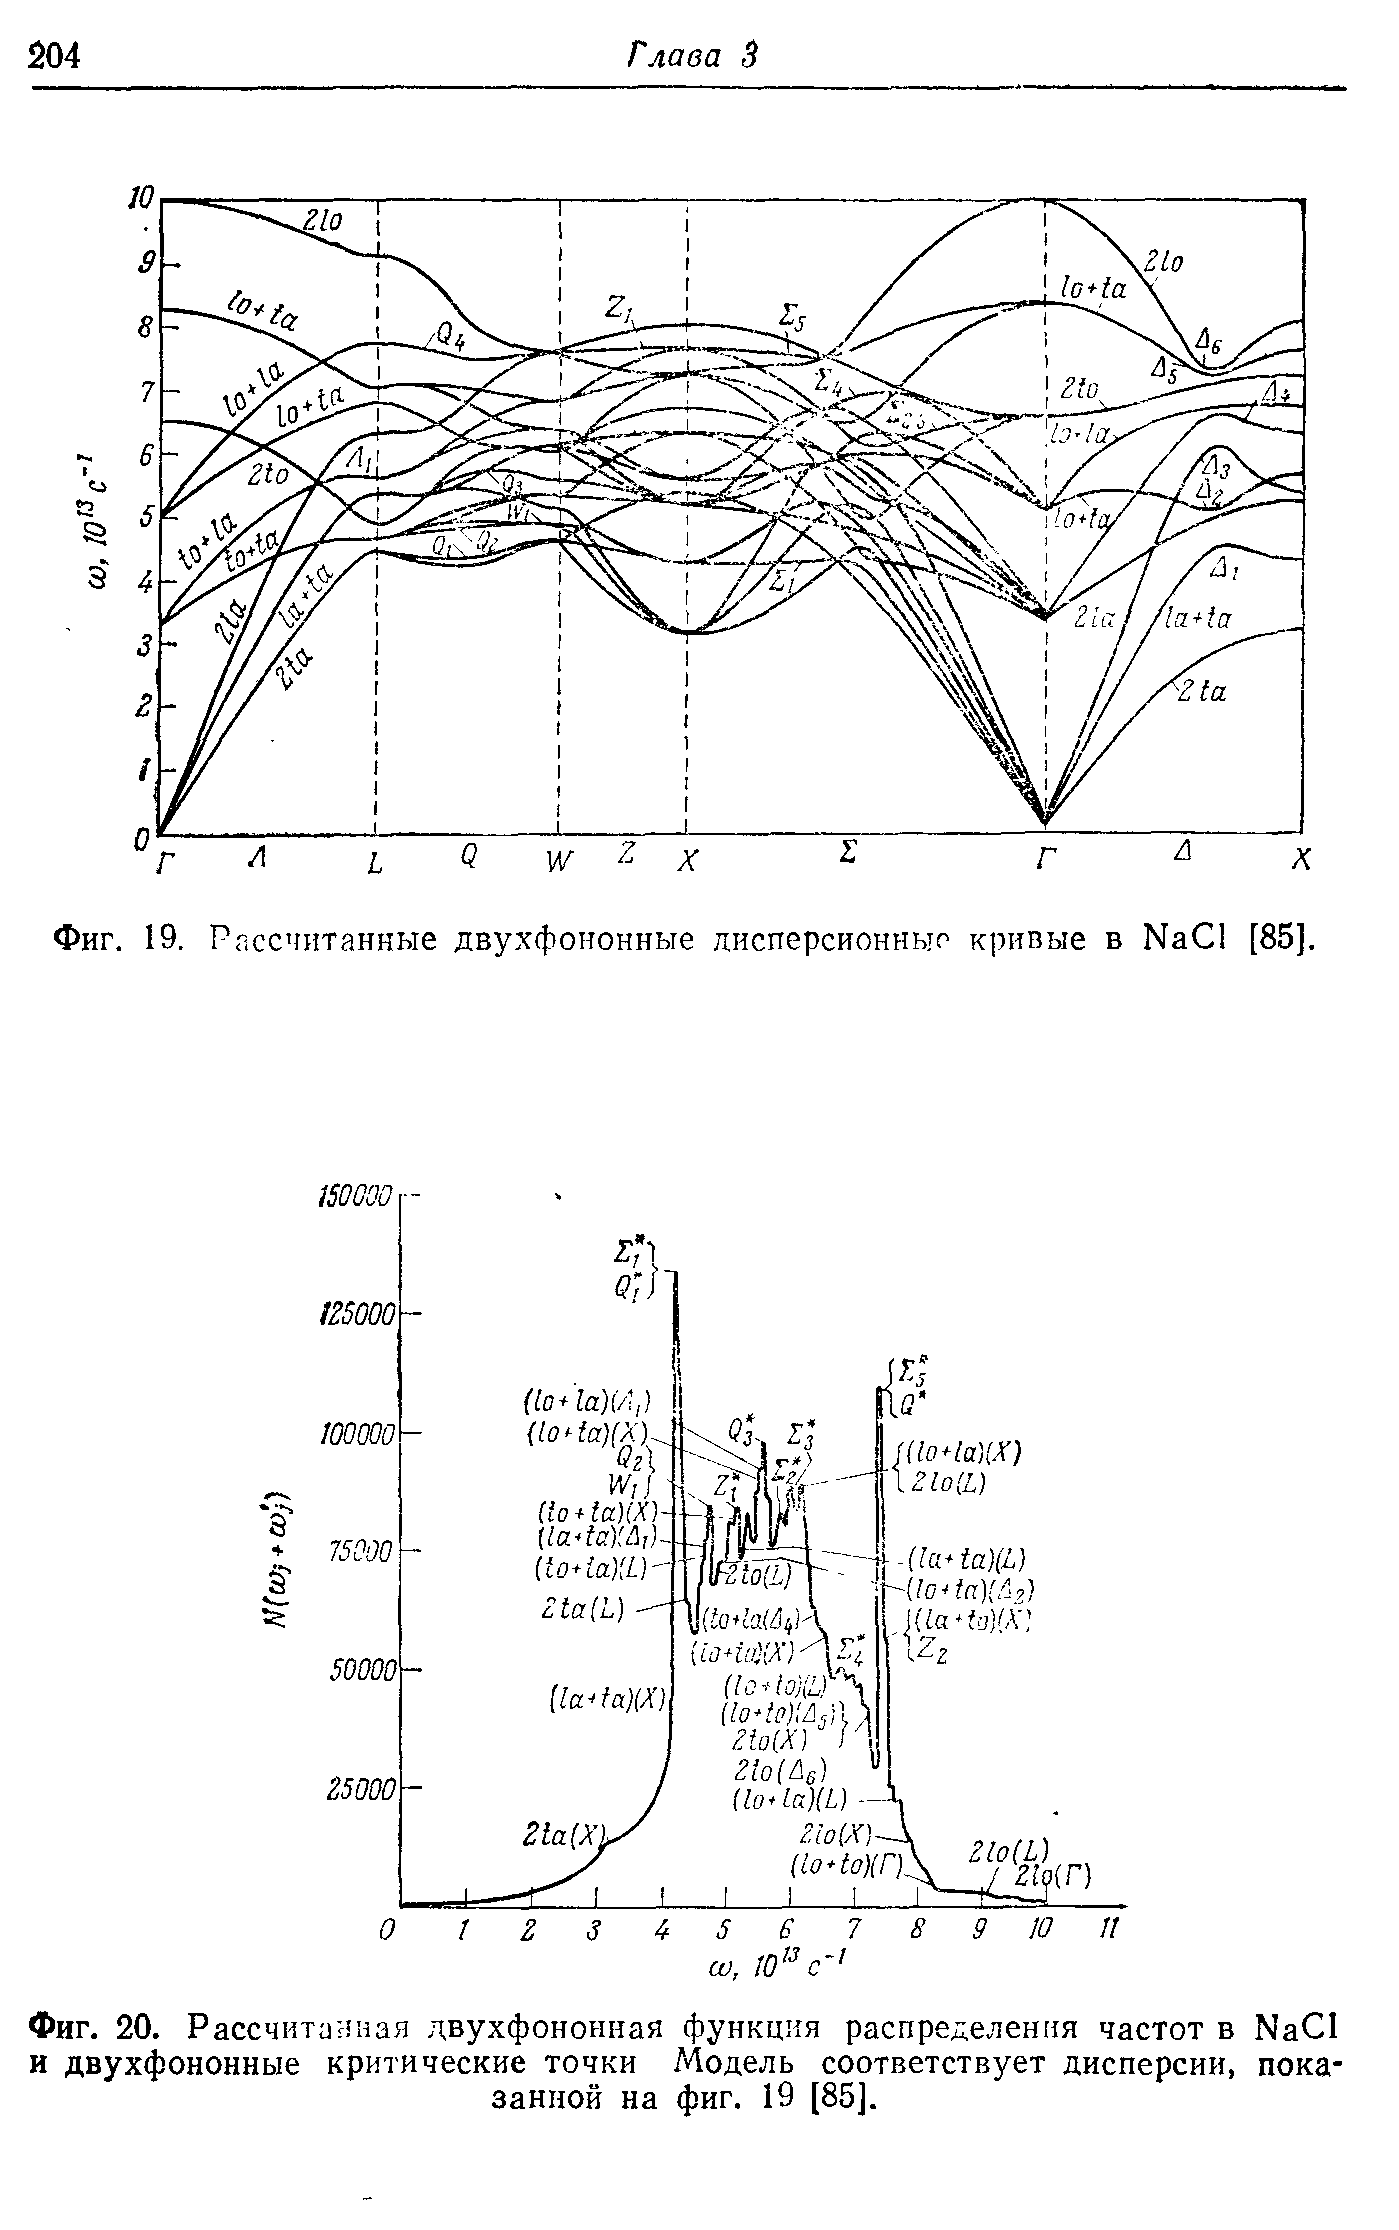 Фиг. 20. Рассчитанная двухфононная функция распределения частот в Na I и двухфононные <a href="/info/21132">критические точки</a> Модель соответствует дисперсии, показанной на фиг. 19 [85].
